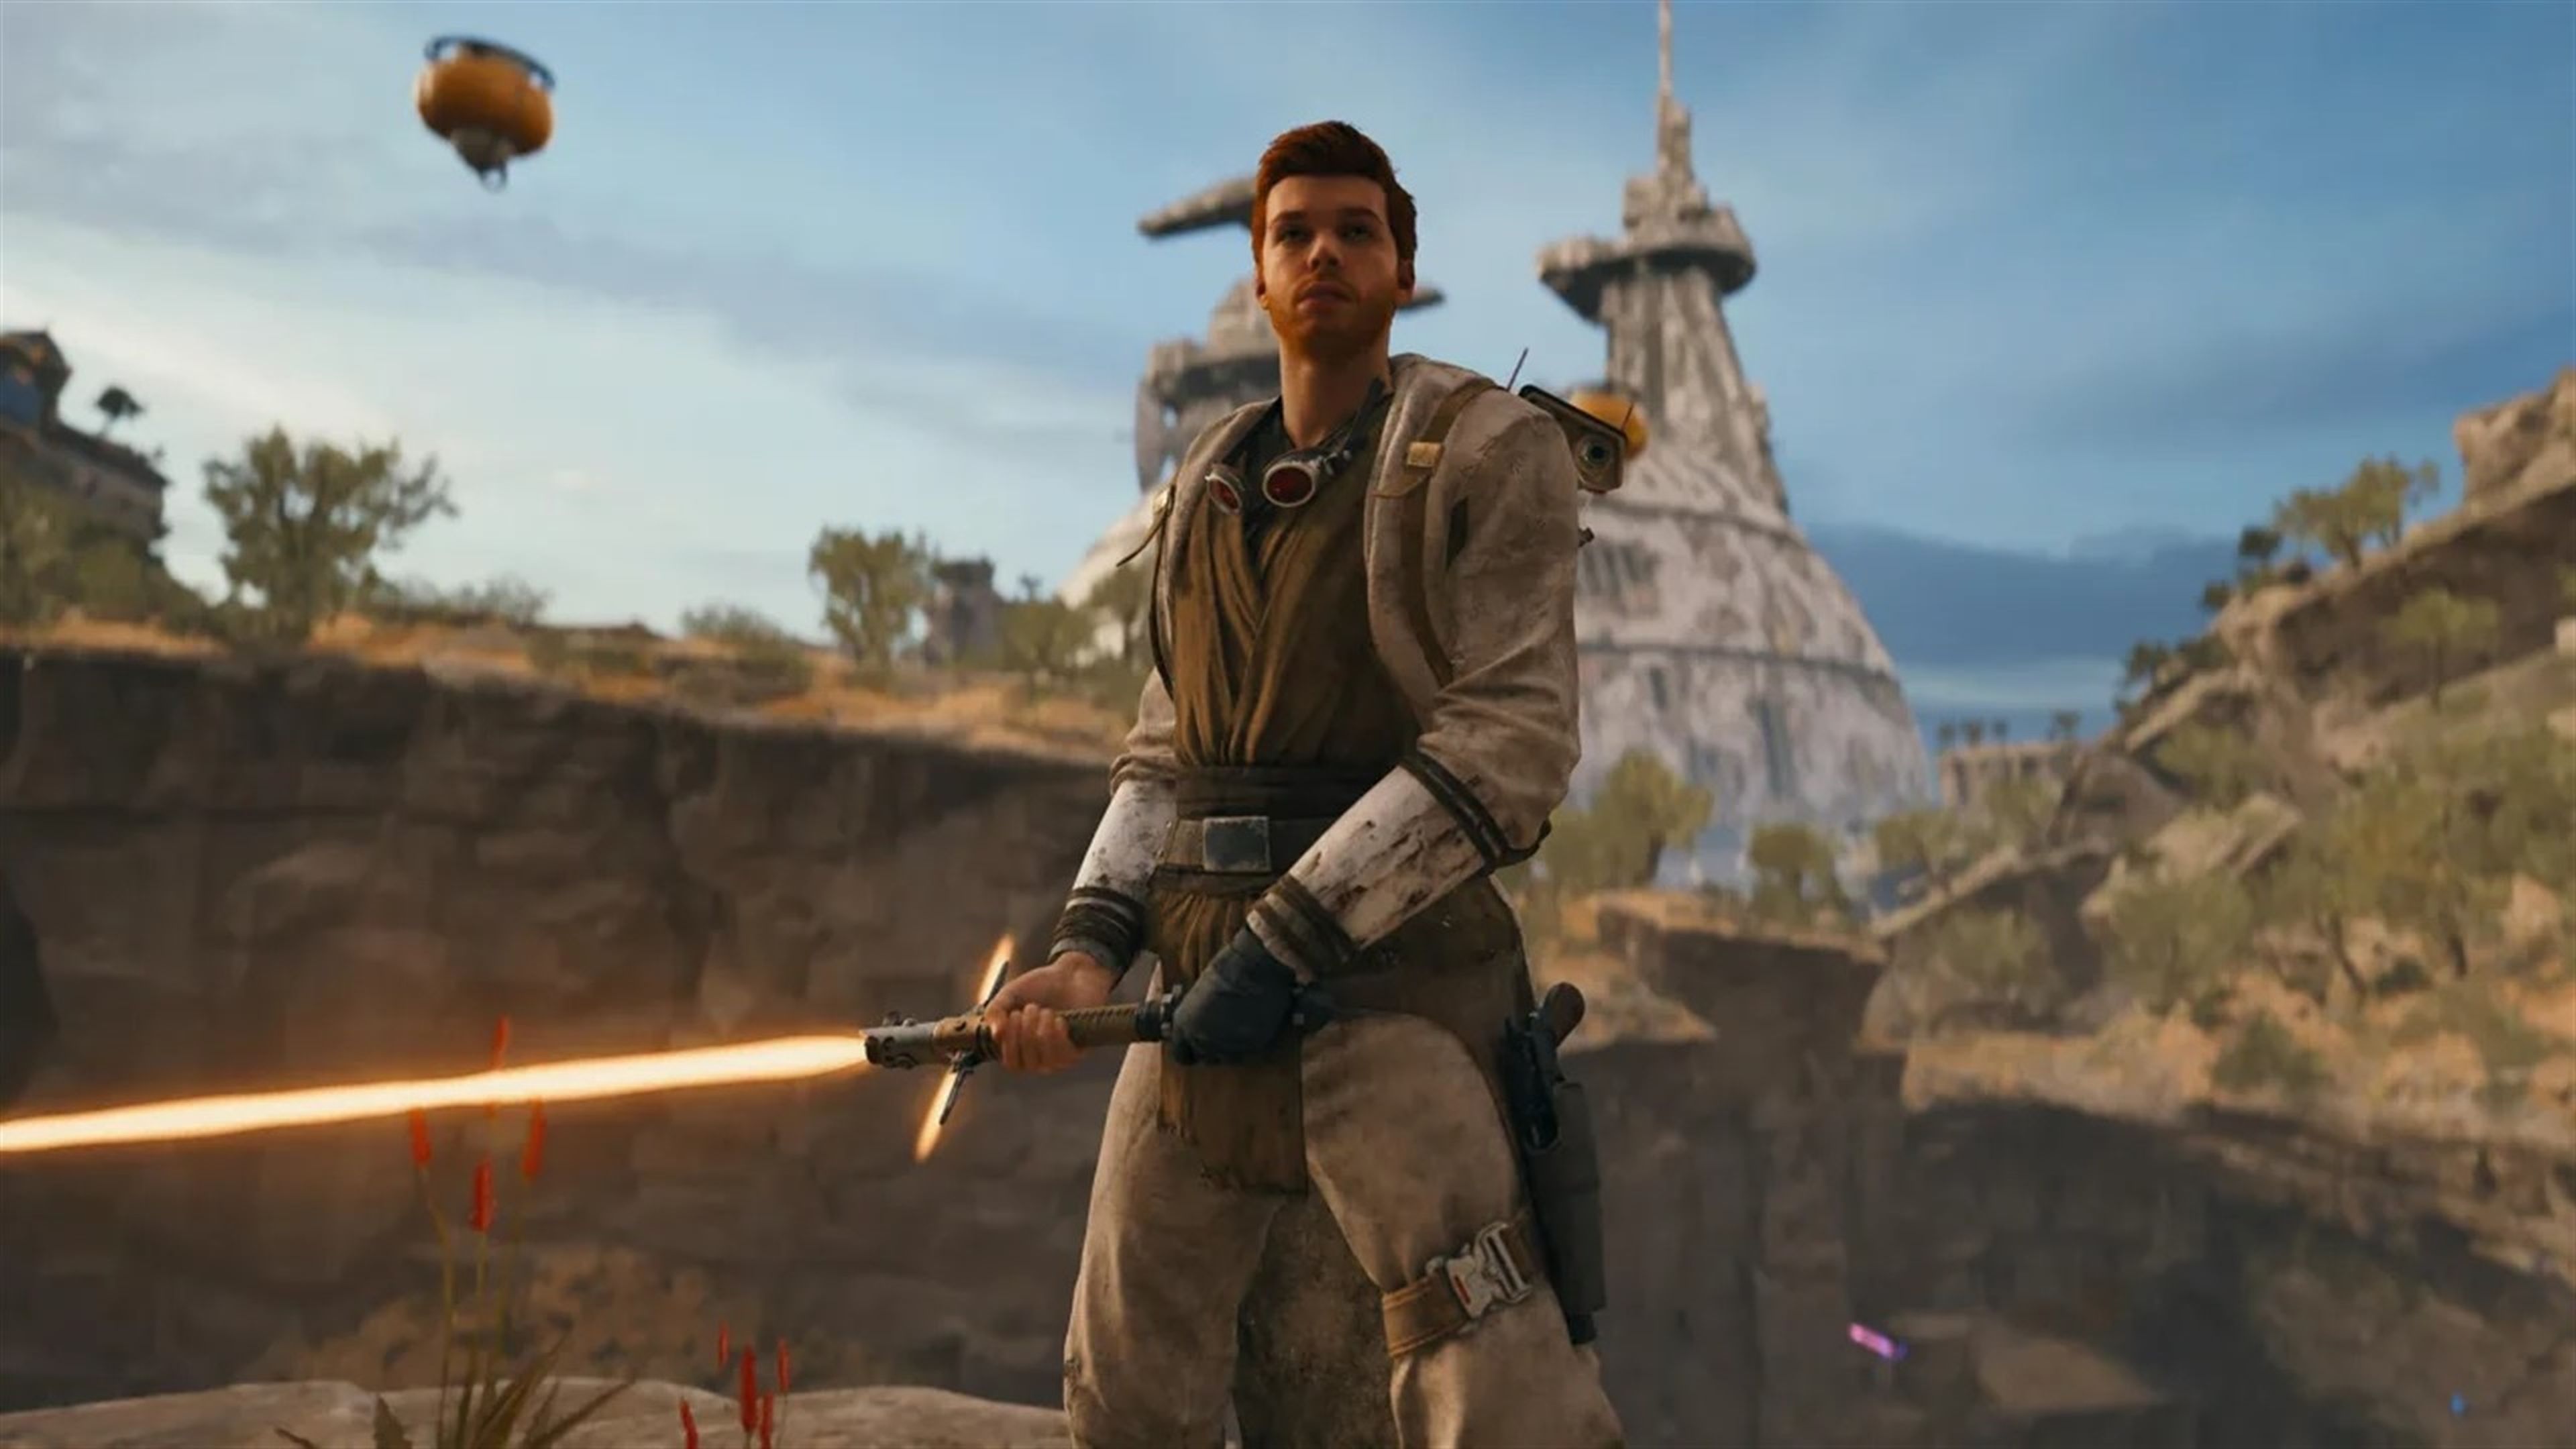 Nuevo parche de Star Wars Jedi: Survivor en PS5 y Xbox Series X, S, pronto a  PC